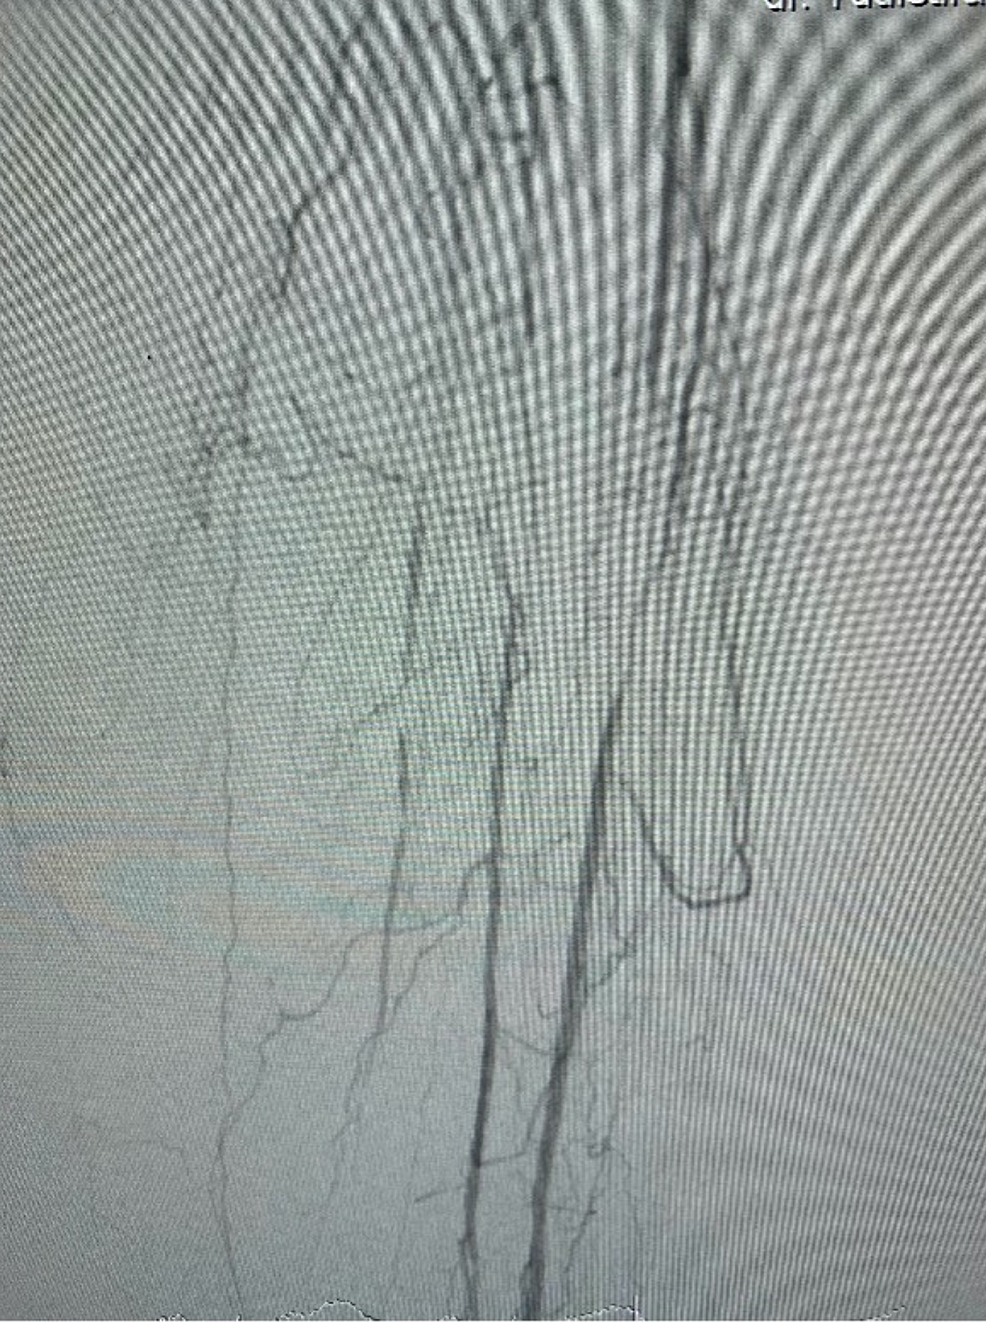 Arteriogram-left-leg-(below-knee)